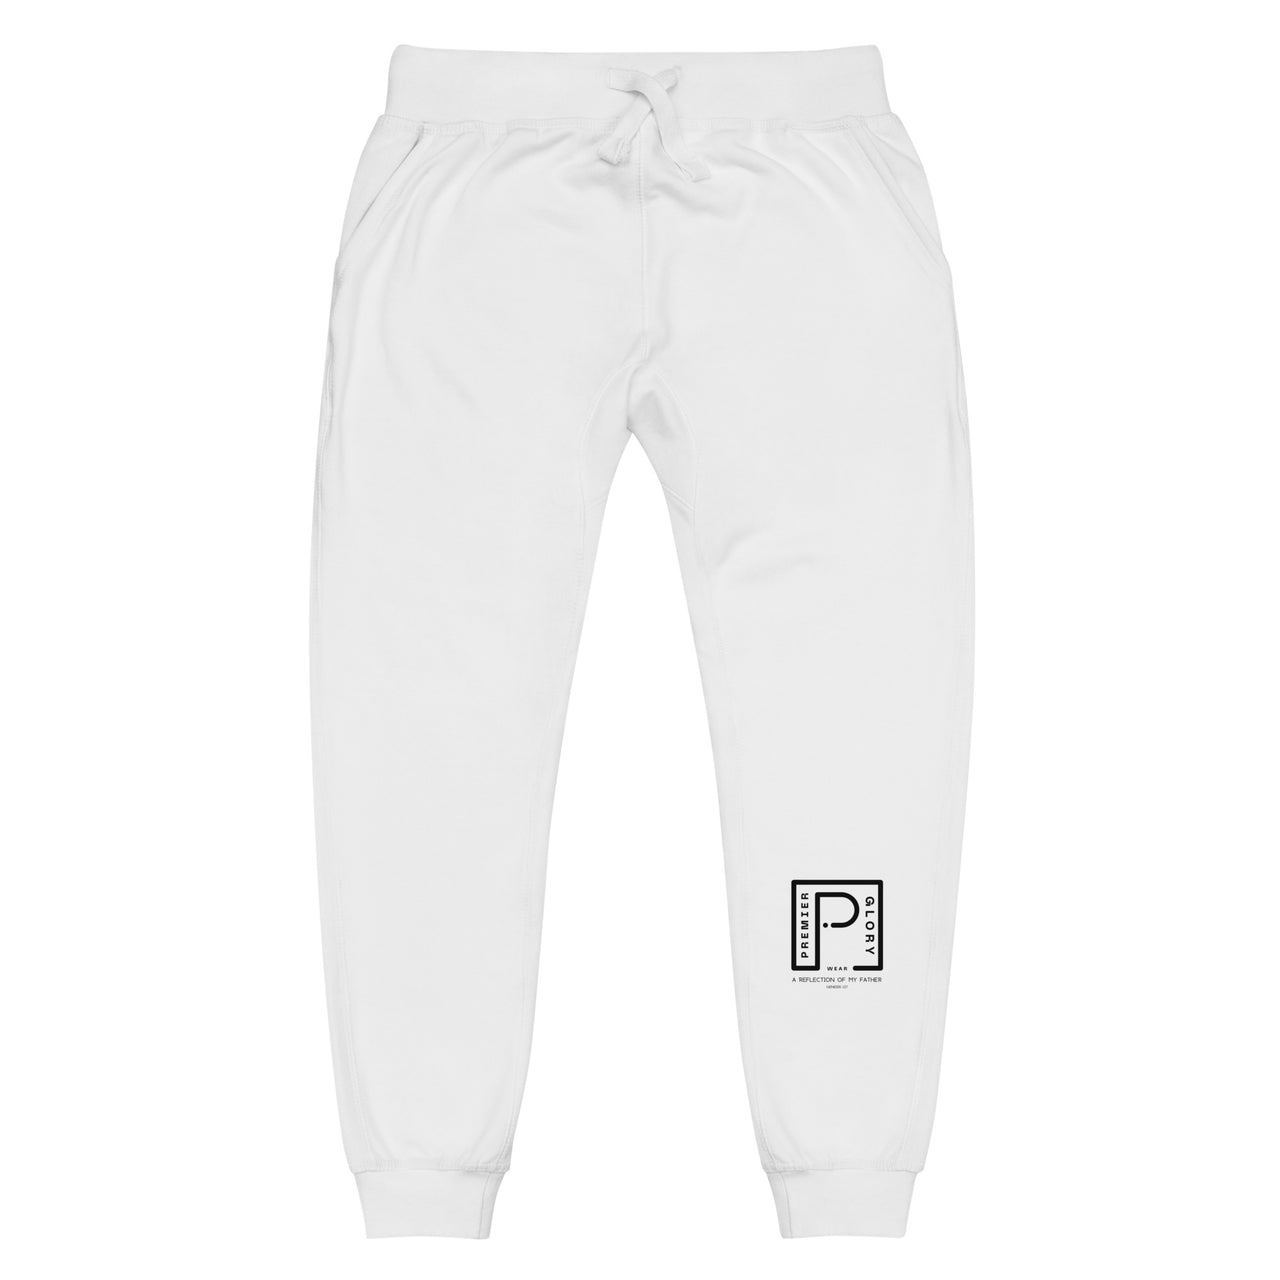 Premier Glory Wear Official Unisex fleece sweatpants